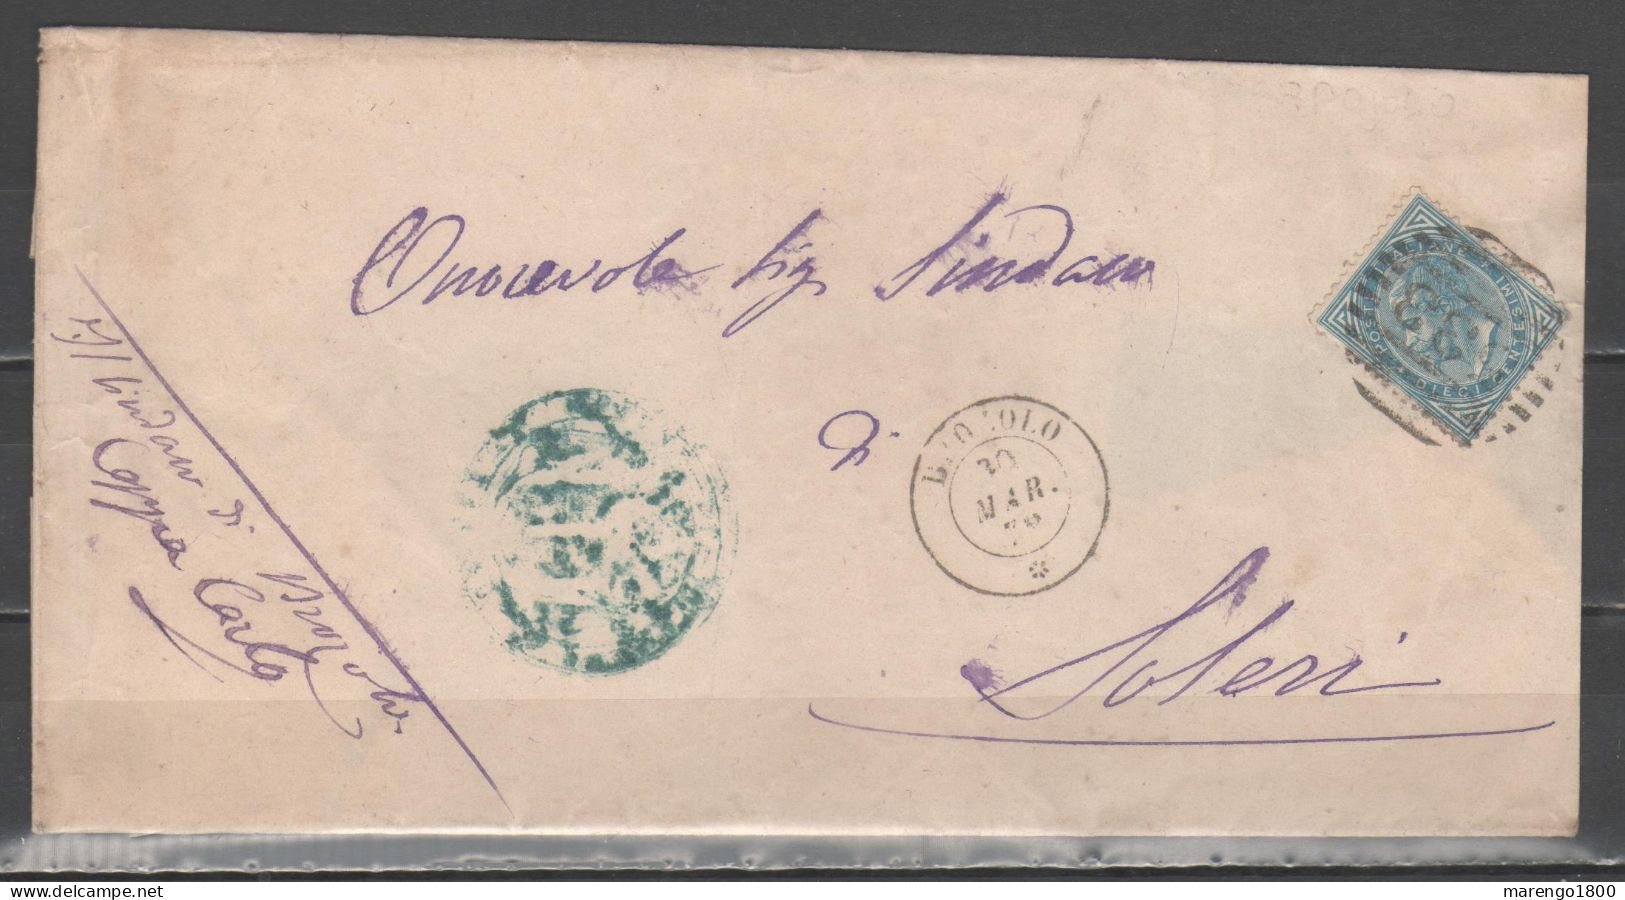 ITALIA 1878 - Effigie 10 C. (1877) Su Lettera Annullo Brozolo        (g9662) - Marcophilia